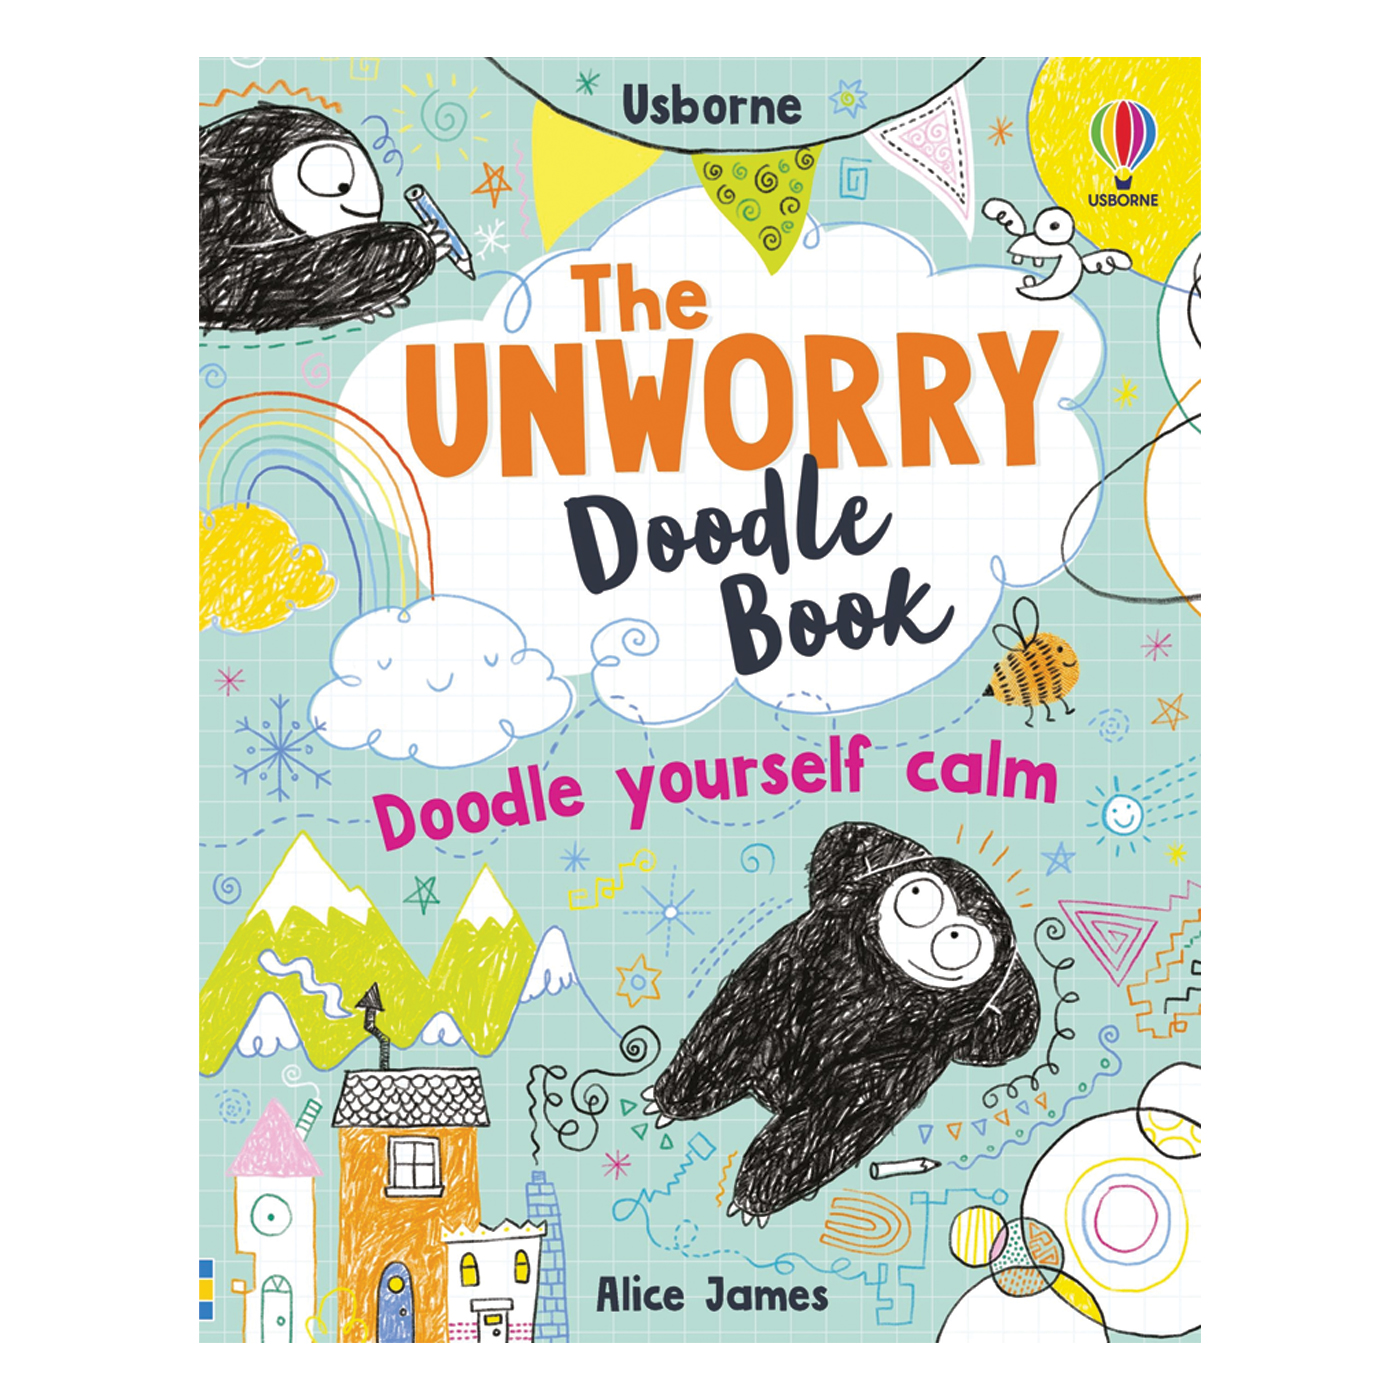  The Unworry Doodle Book